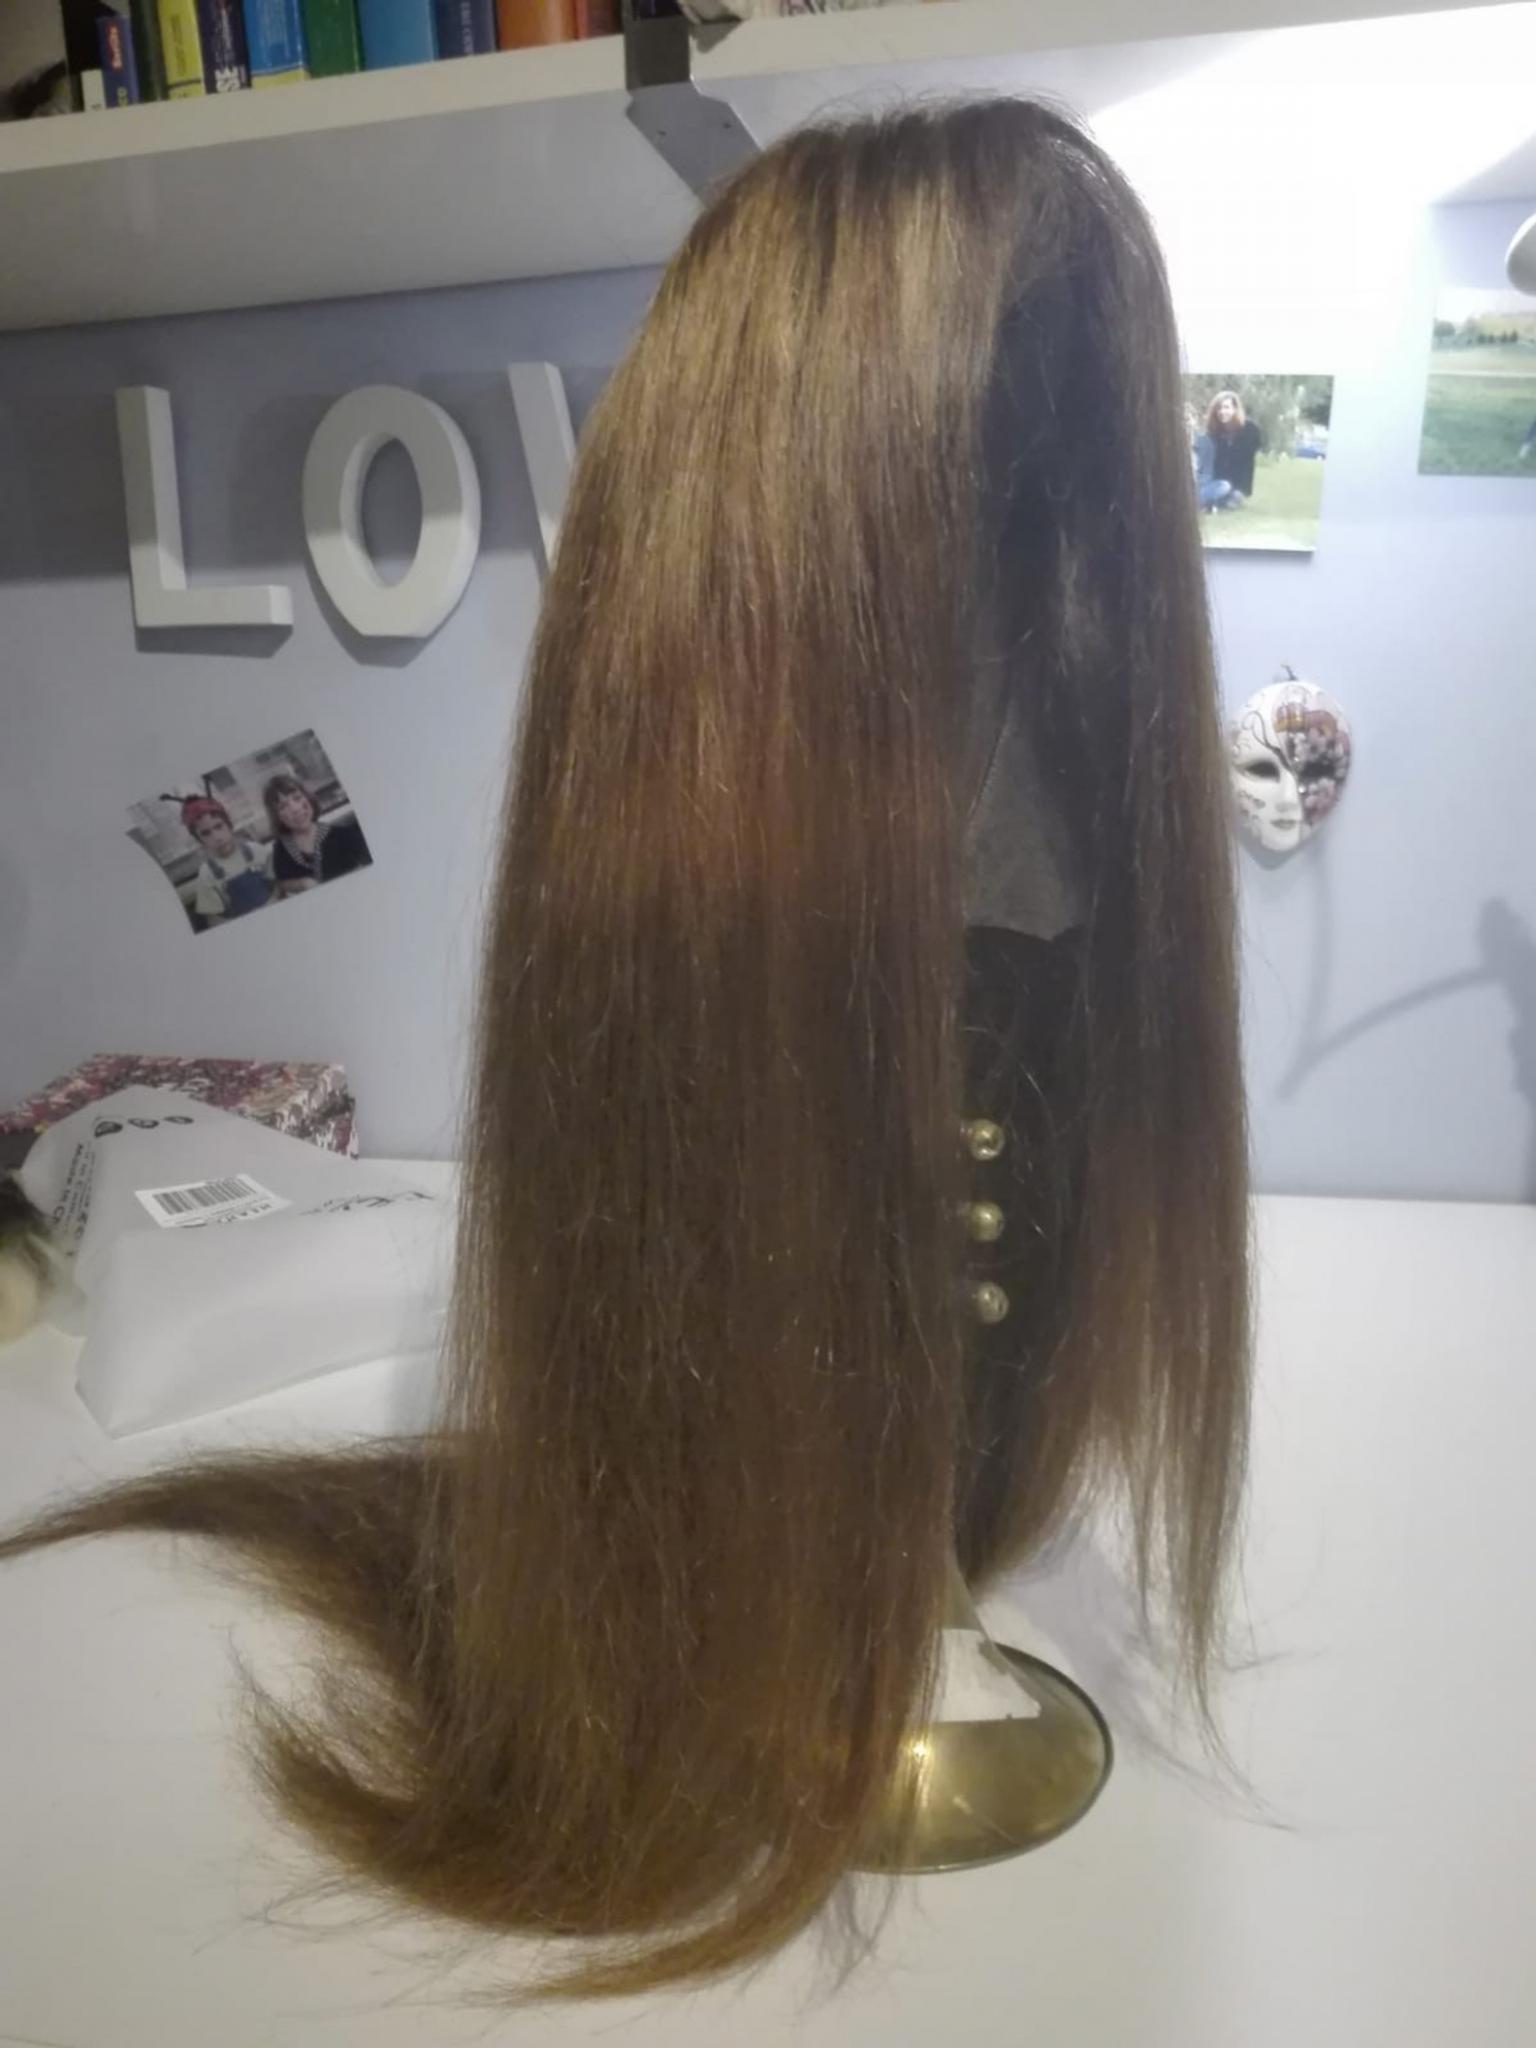 Parrucca capelli 100% veri in 13900 Biella for €100.00 for sale | Shpock